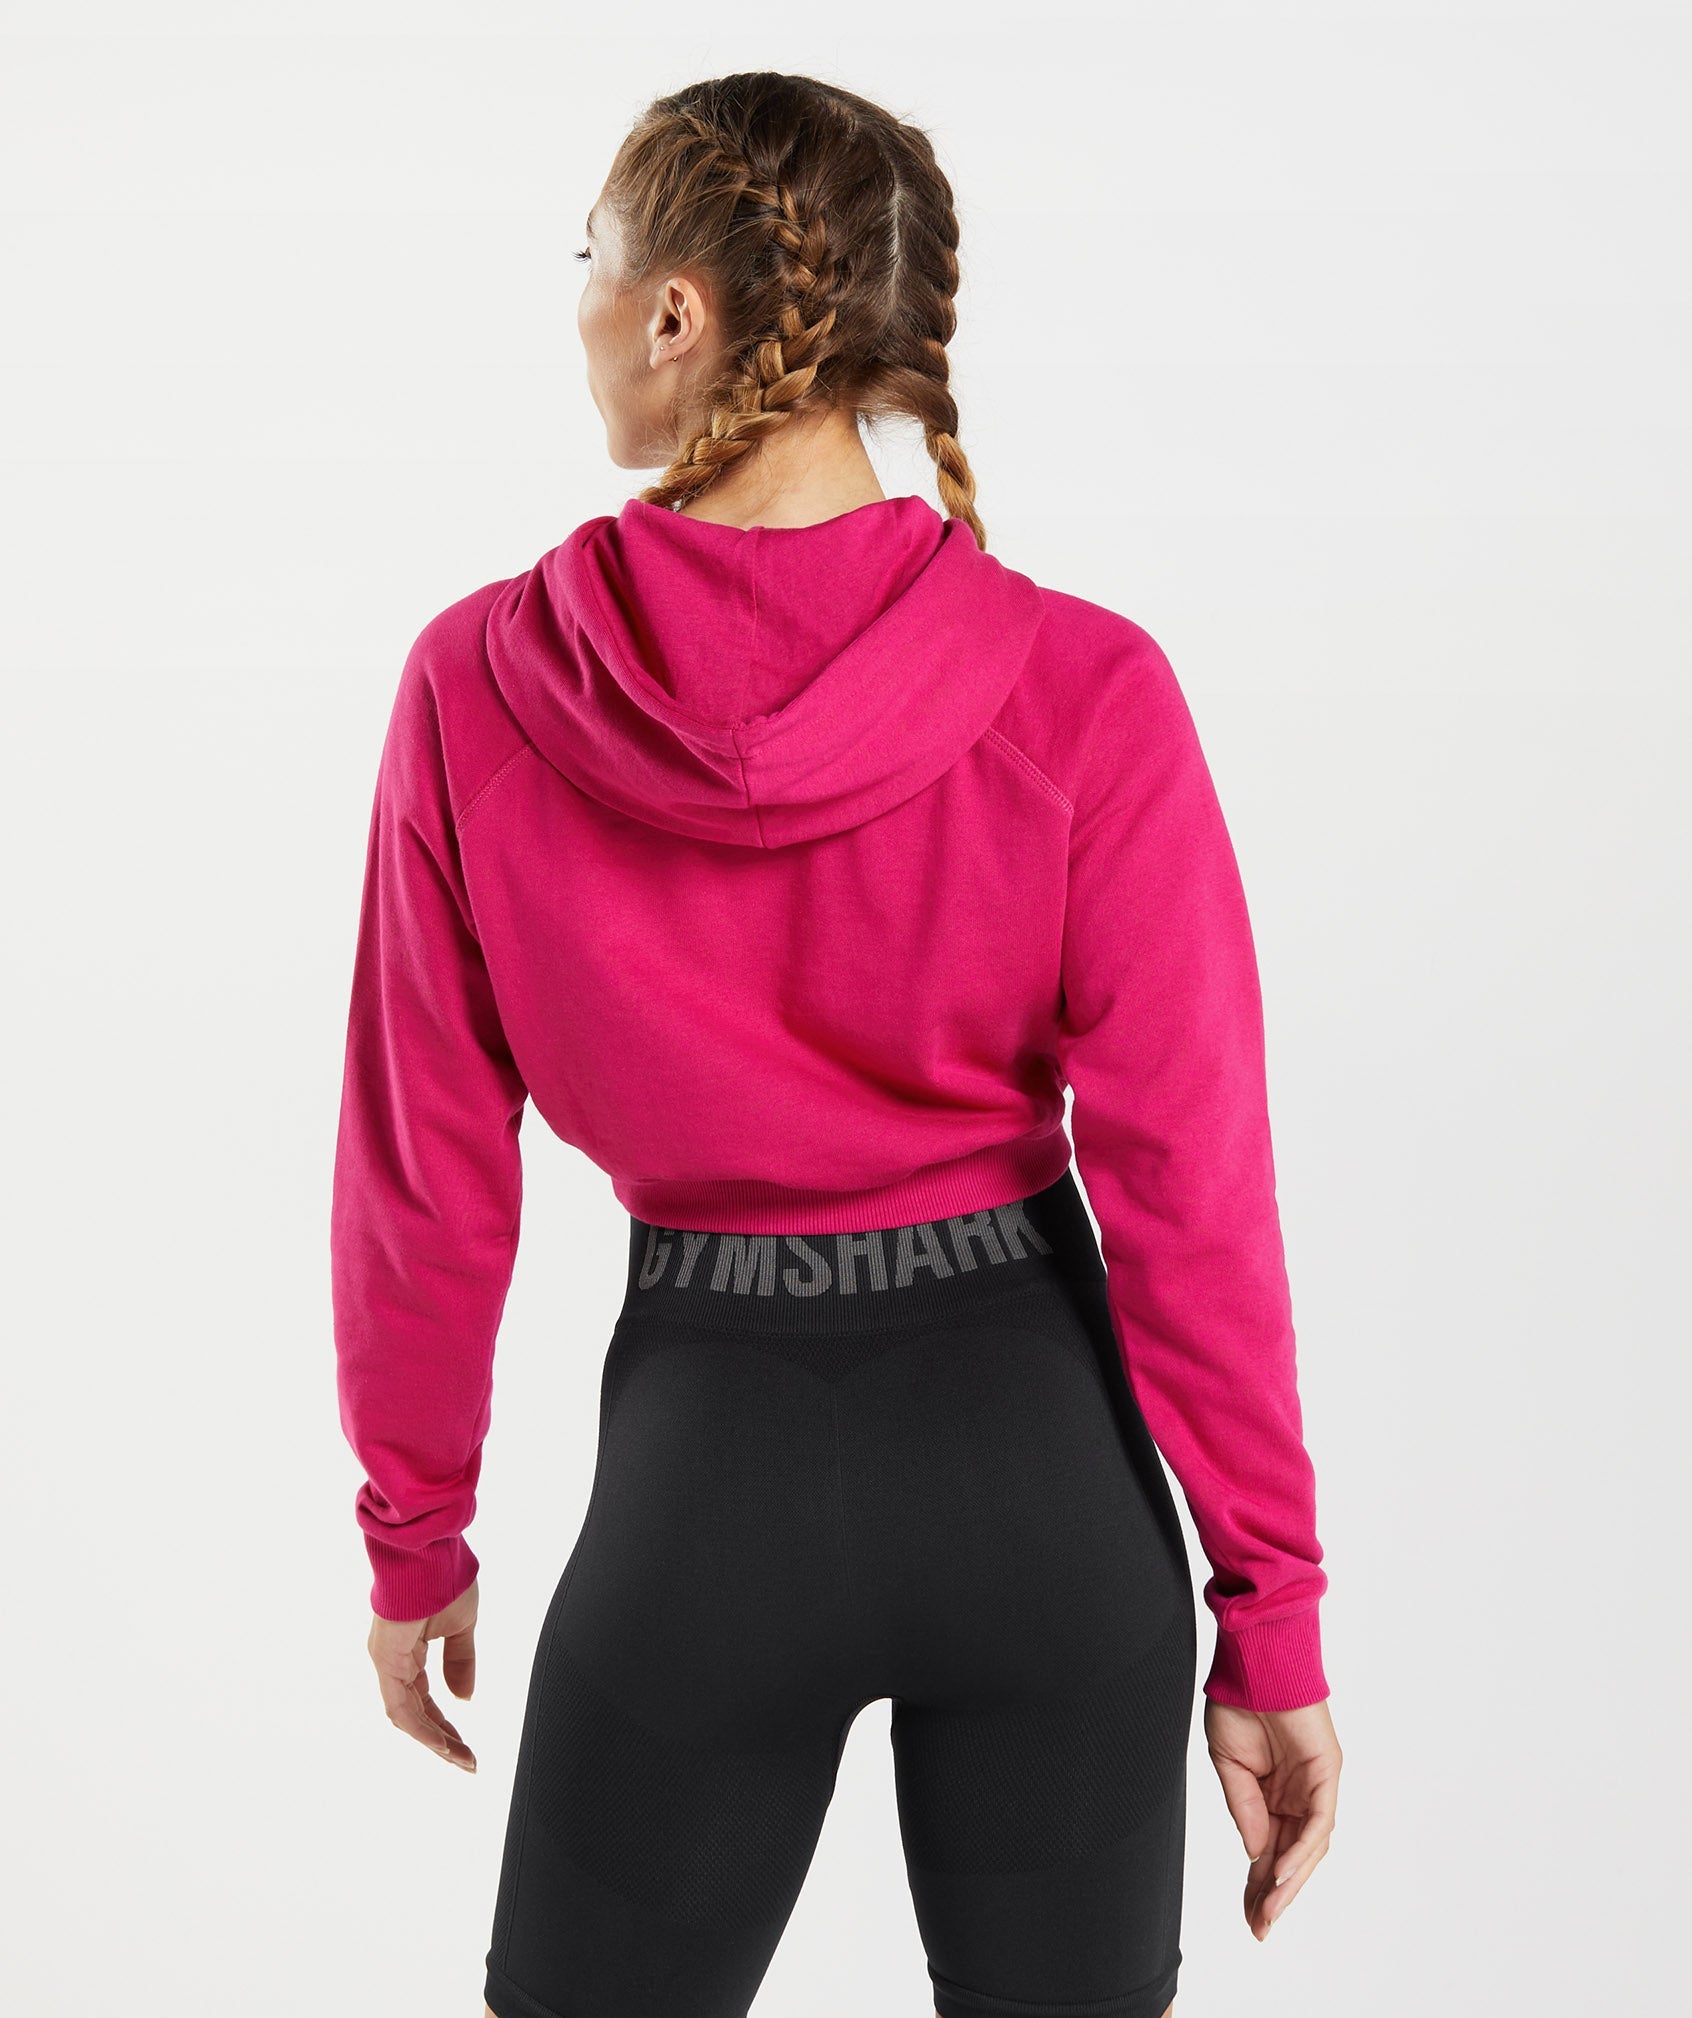 GymShark Hoodie Womens Medium Full Zip Up Cropped Activewear Athletic Pink  NWOT